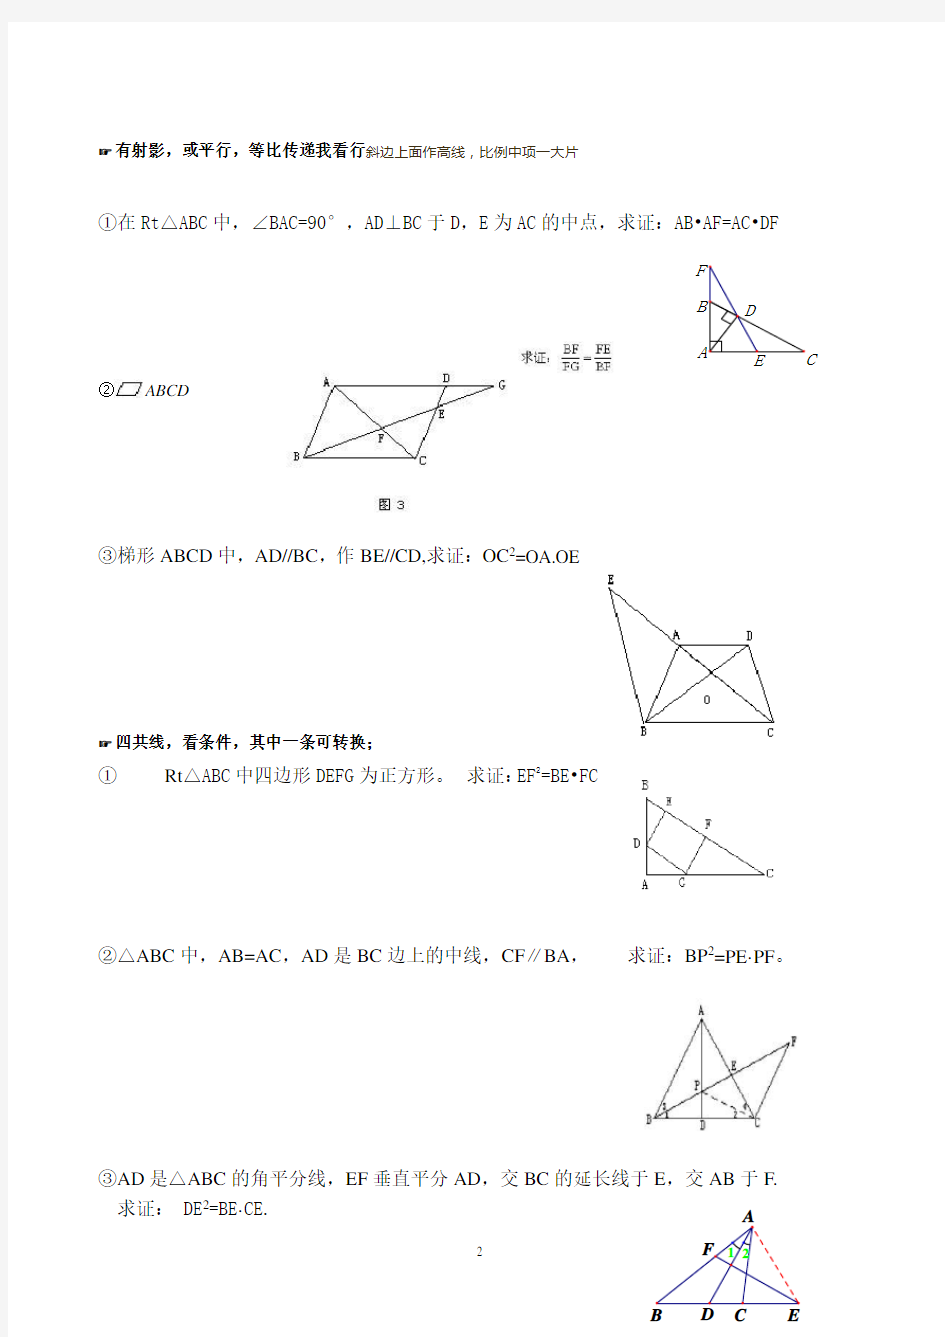 相似三角形常见题型解法归纳